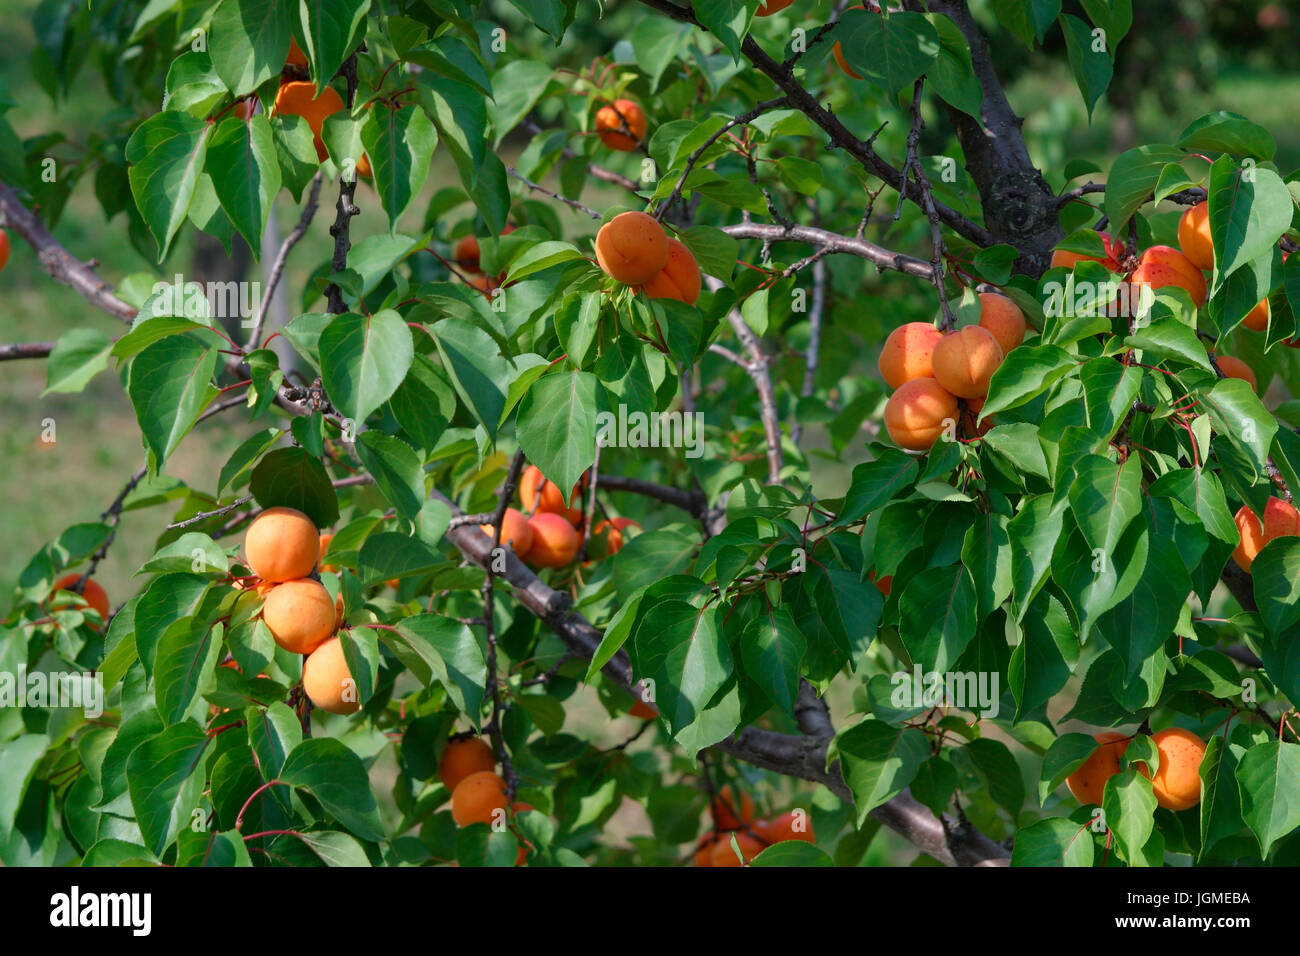 Apricot tree, Wachauer apricots, Wachau, Lower Austria, Austria - apricot, Wachau region, Lower Austria, Austria, Marillenbaum, Wachauer Marillen, Nie Stock Photo